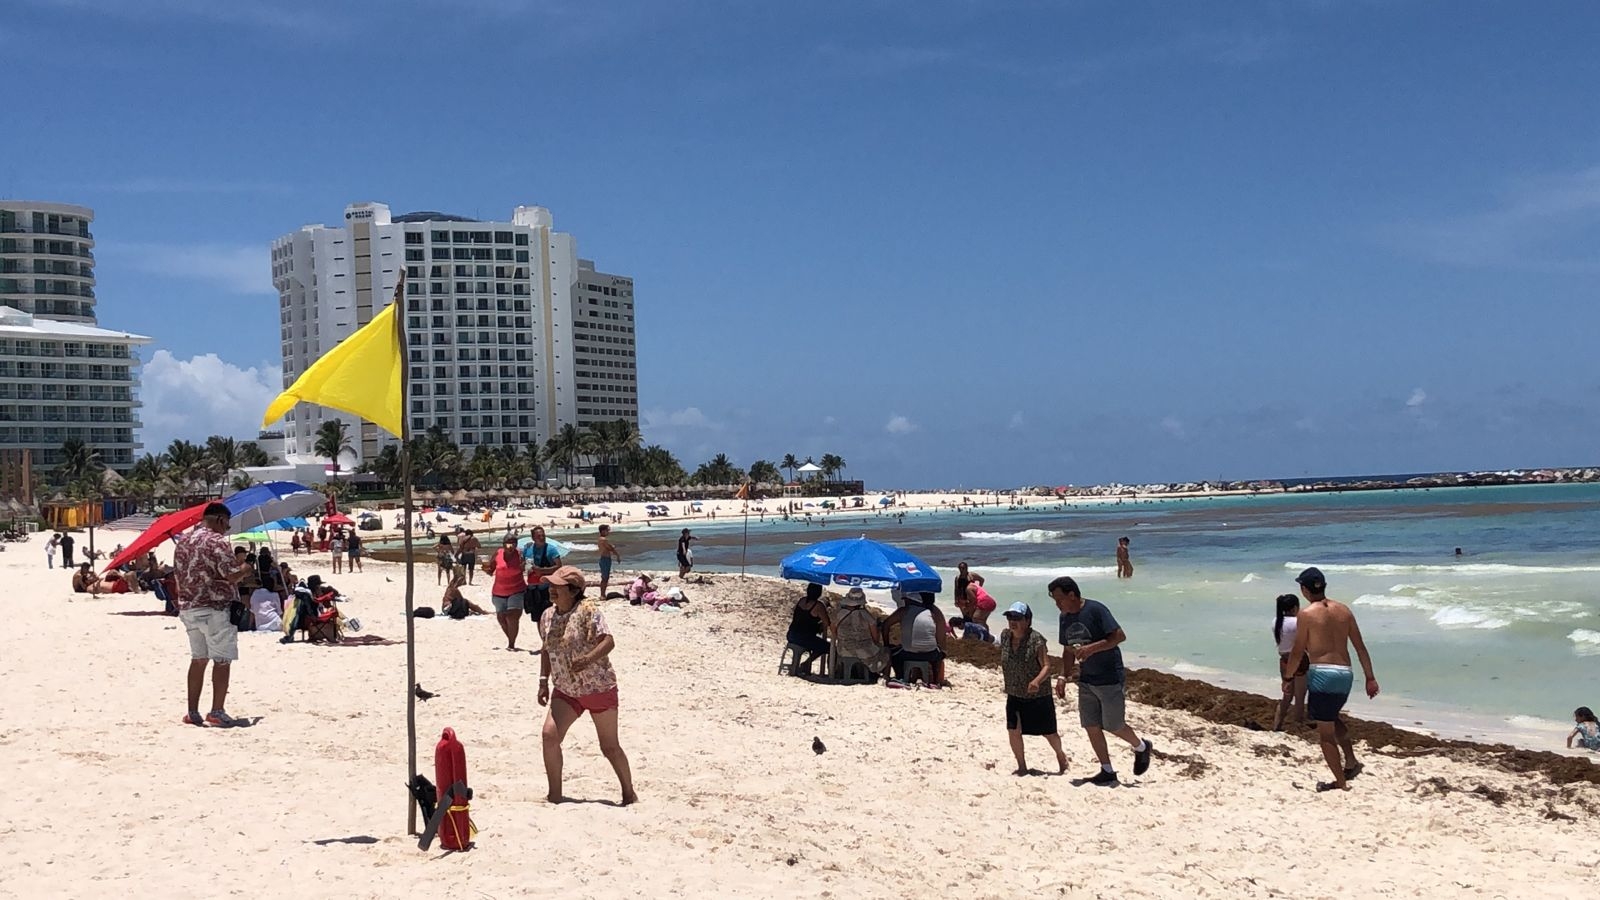 El cielo soleado pronosticado por el SMN beneficiará al turismo, ya que les permitirá visitar las playas de Cancún